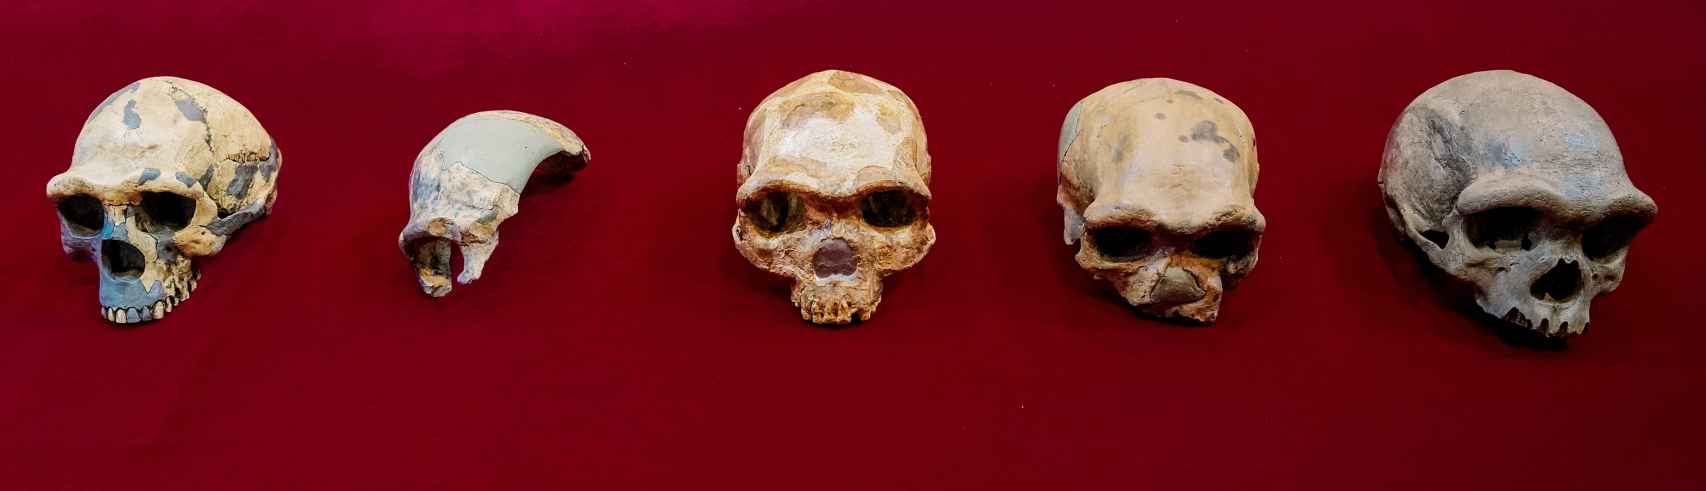 El cráneo de Harbin, en el extremo de la derecha, comparado con otros fósiles conservados en China.